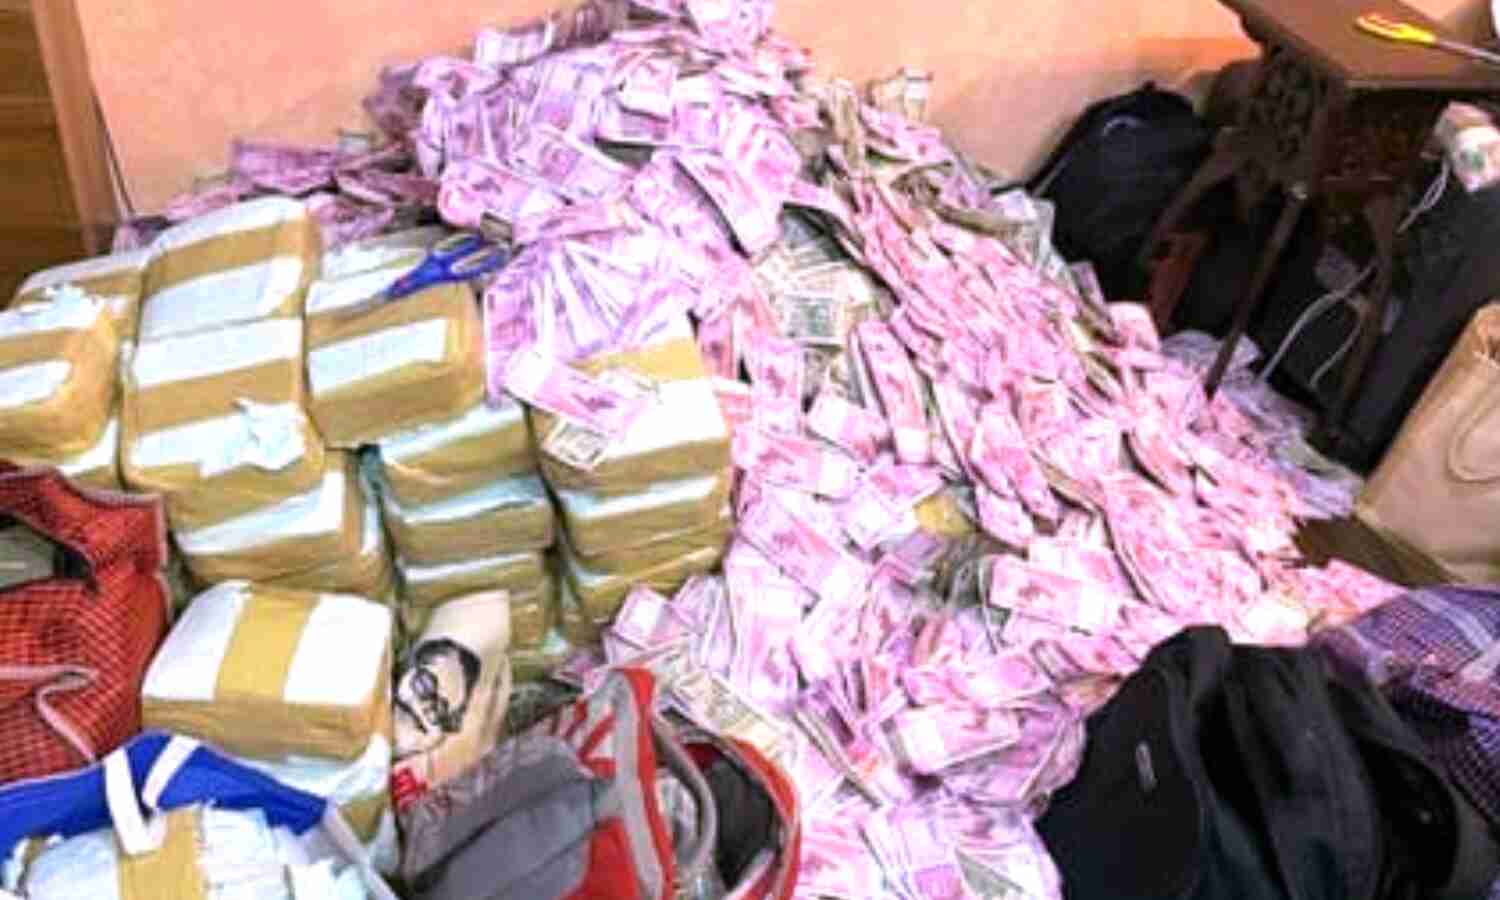 West Bengal News : ममता बनर्जी के मंत्री पार्थ चटर्जी की करीबी के घर पर ED का छापा, 20 करोड़ कैश बरामद